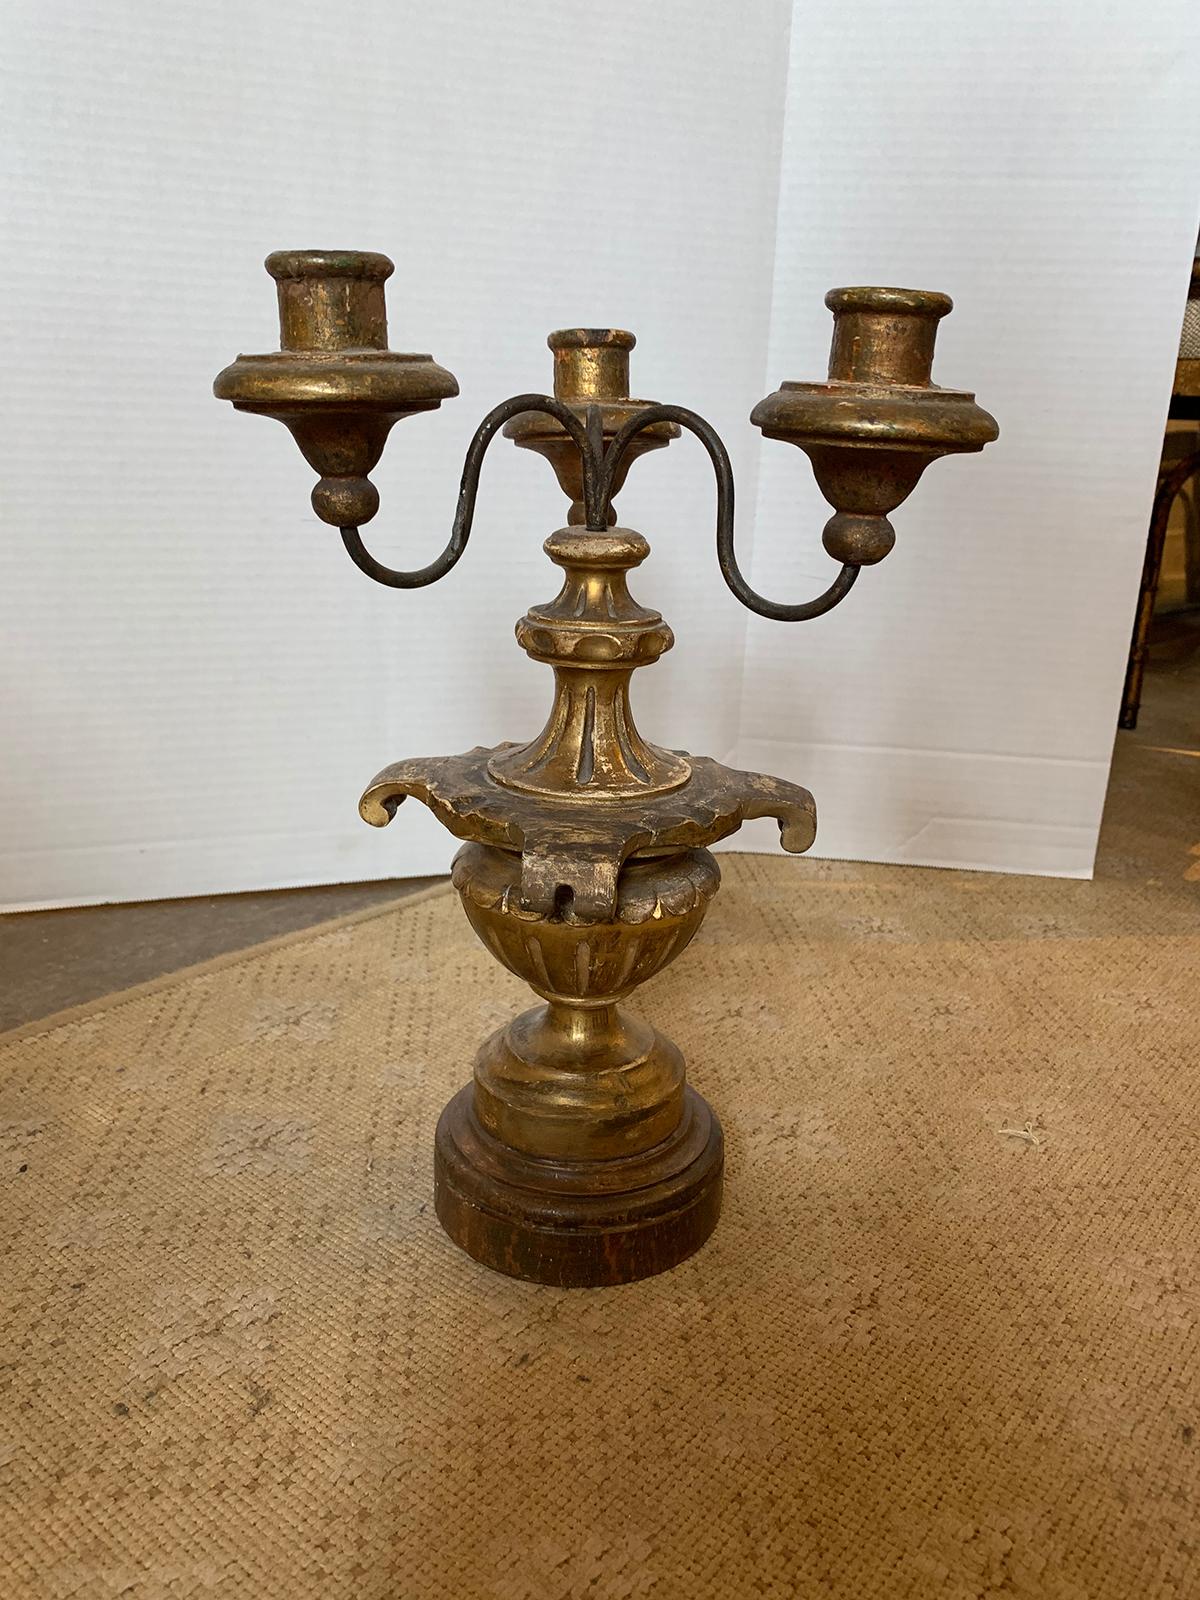 19th-20th century Italian three-arm giltwood candelabra.